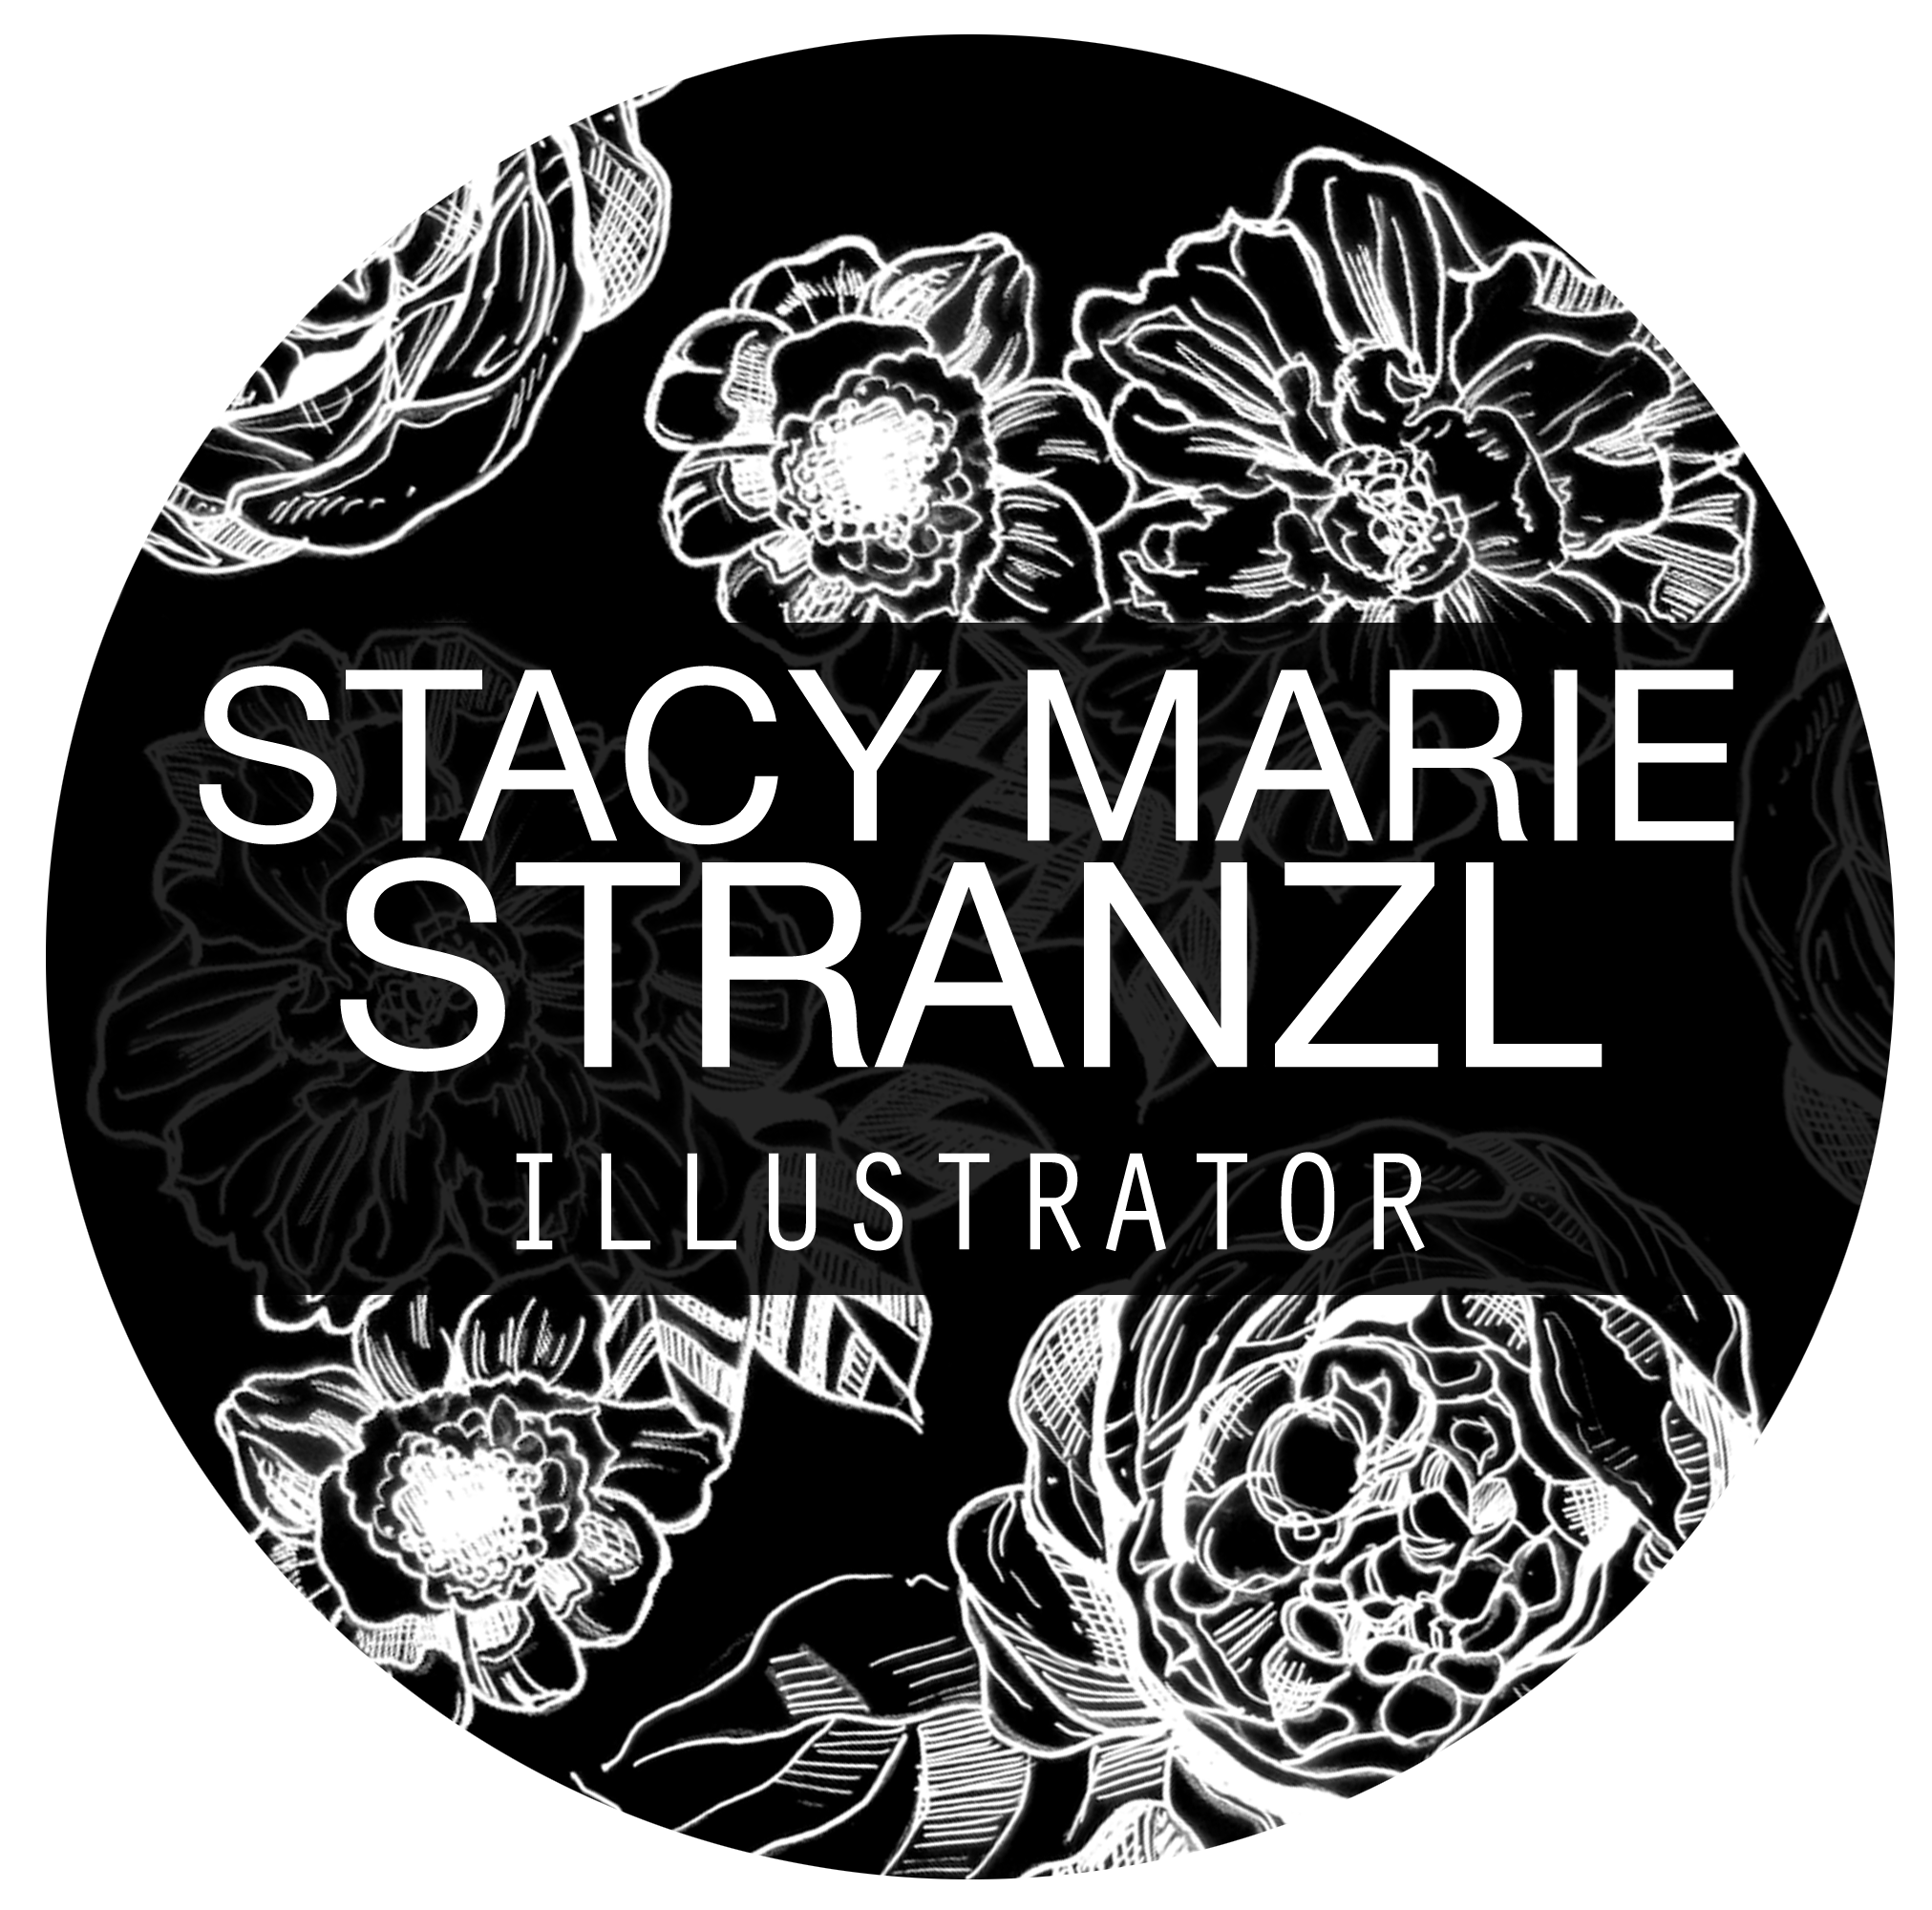 Stacy Marie Stranzl